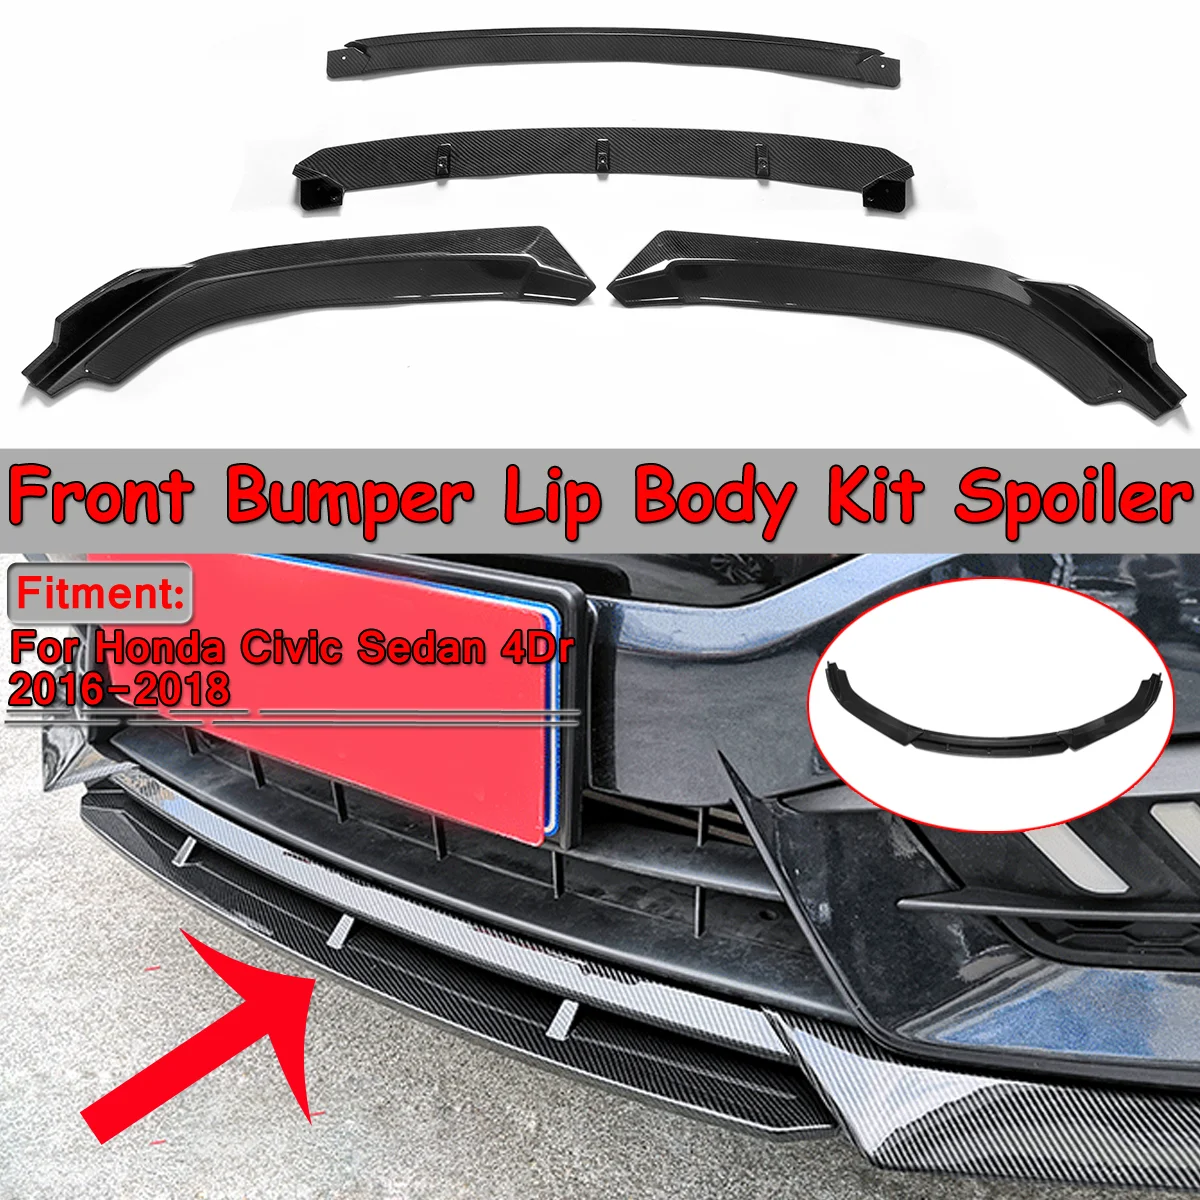 Difusor de labios de parachoques delantero, kit de carrocería, alerón, parachoques, protector de fibra de carbono de fácil instalación para coche Honda Civic Sedan 4Dr, 2016-2018